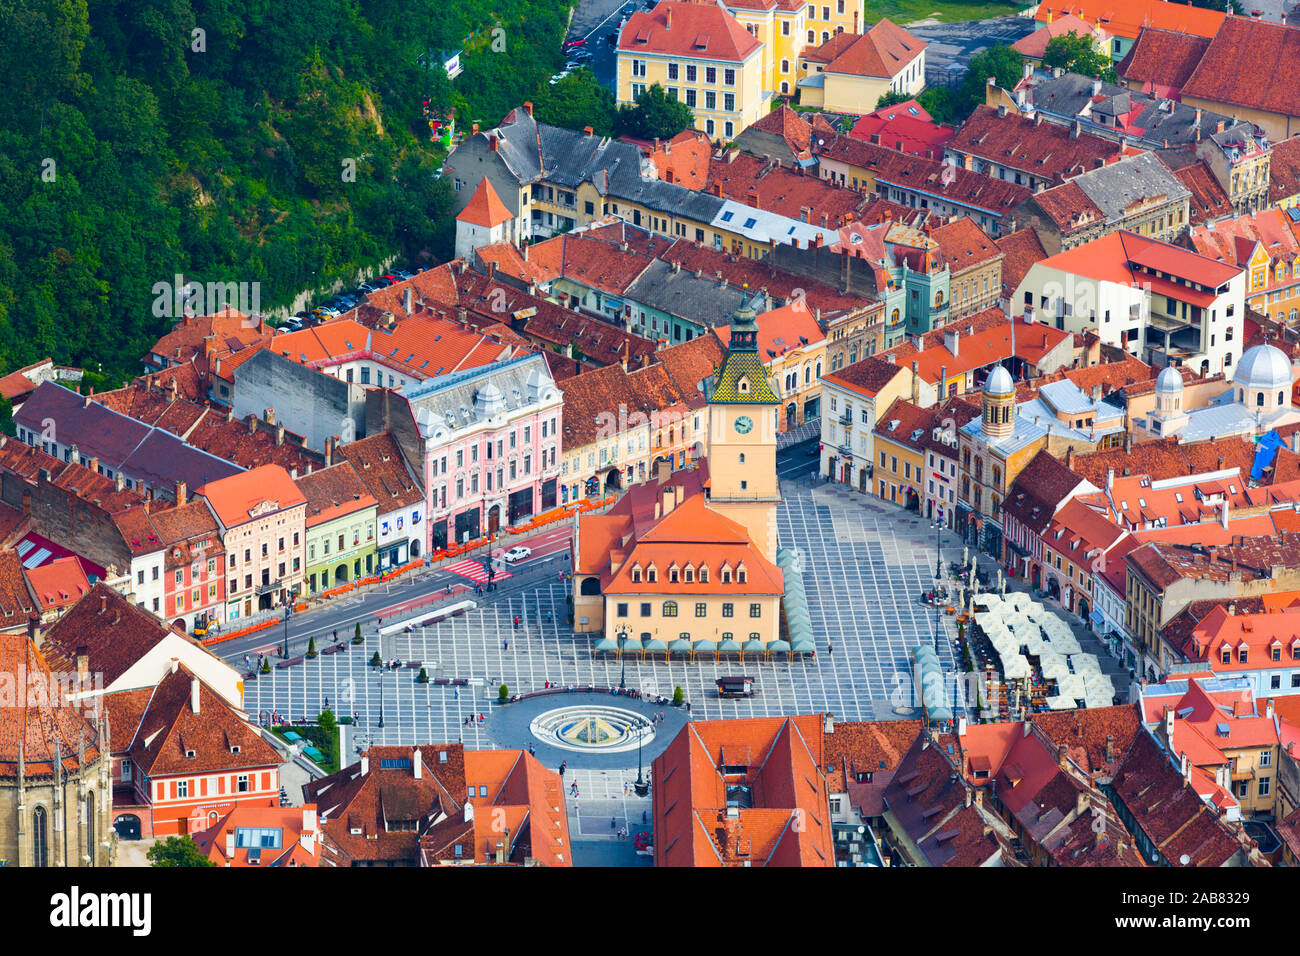 Piata Sfatului (Council Square), Brasov, Transylvania Region, Romania, Europe Stock Photo